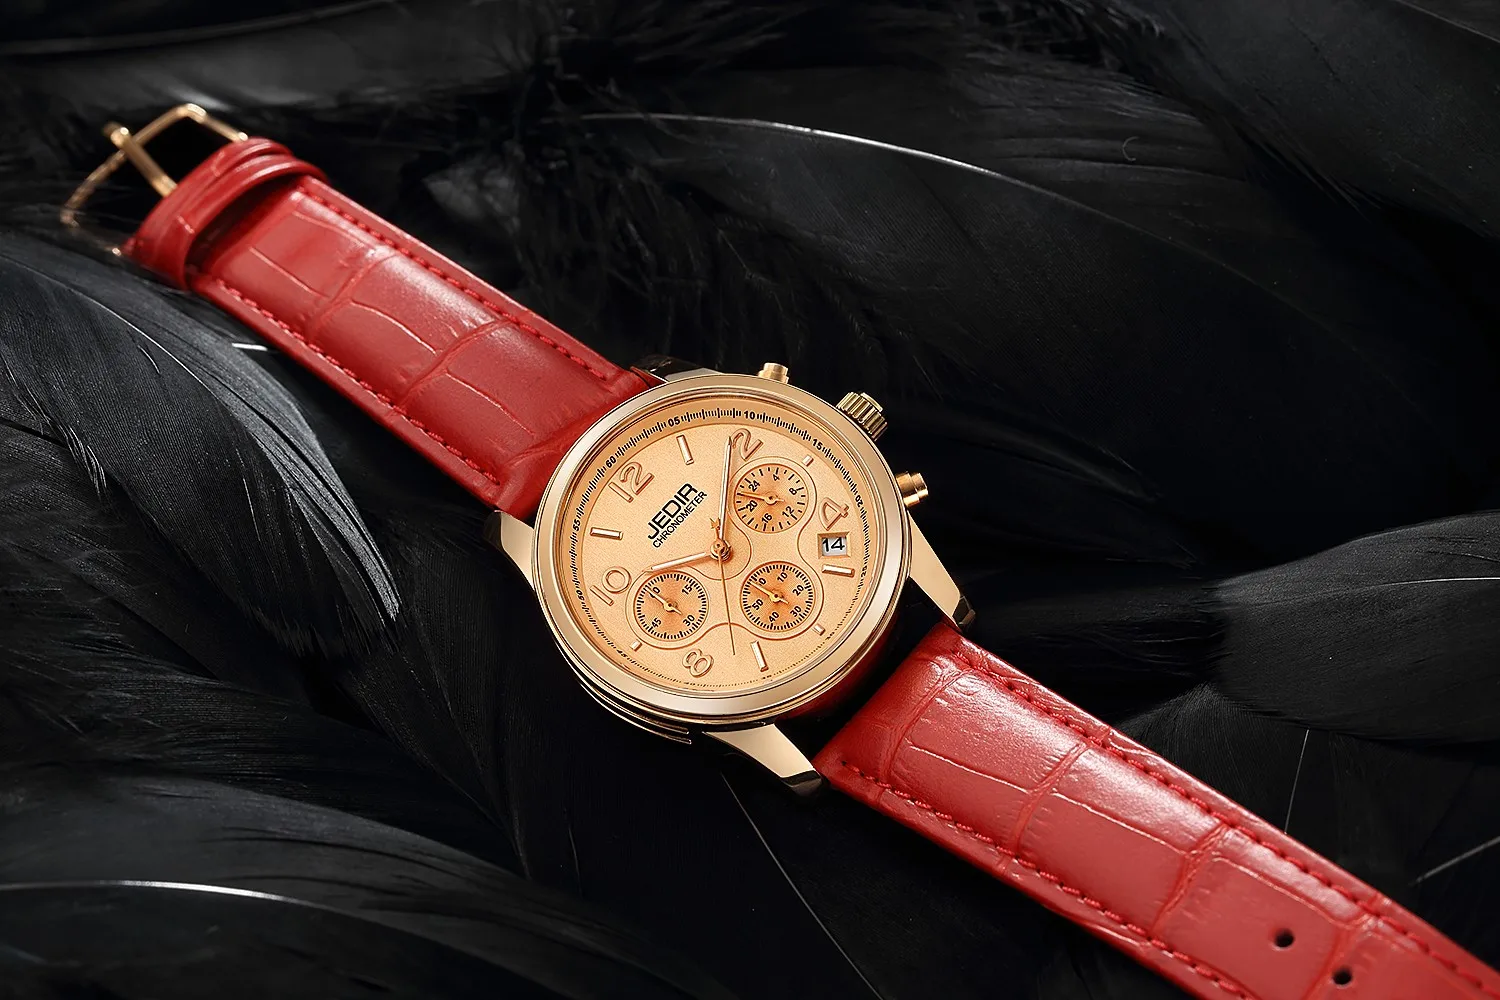 Роскошные Брендовые женские часы с хронографом, модные наручные кварцевые часы из натуральной кожи для девушек, женские часы для влюбленных, нарядные часы